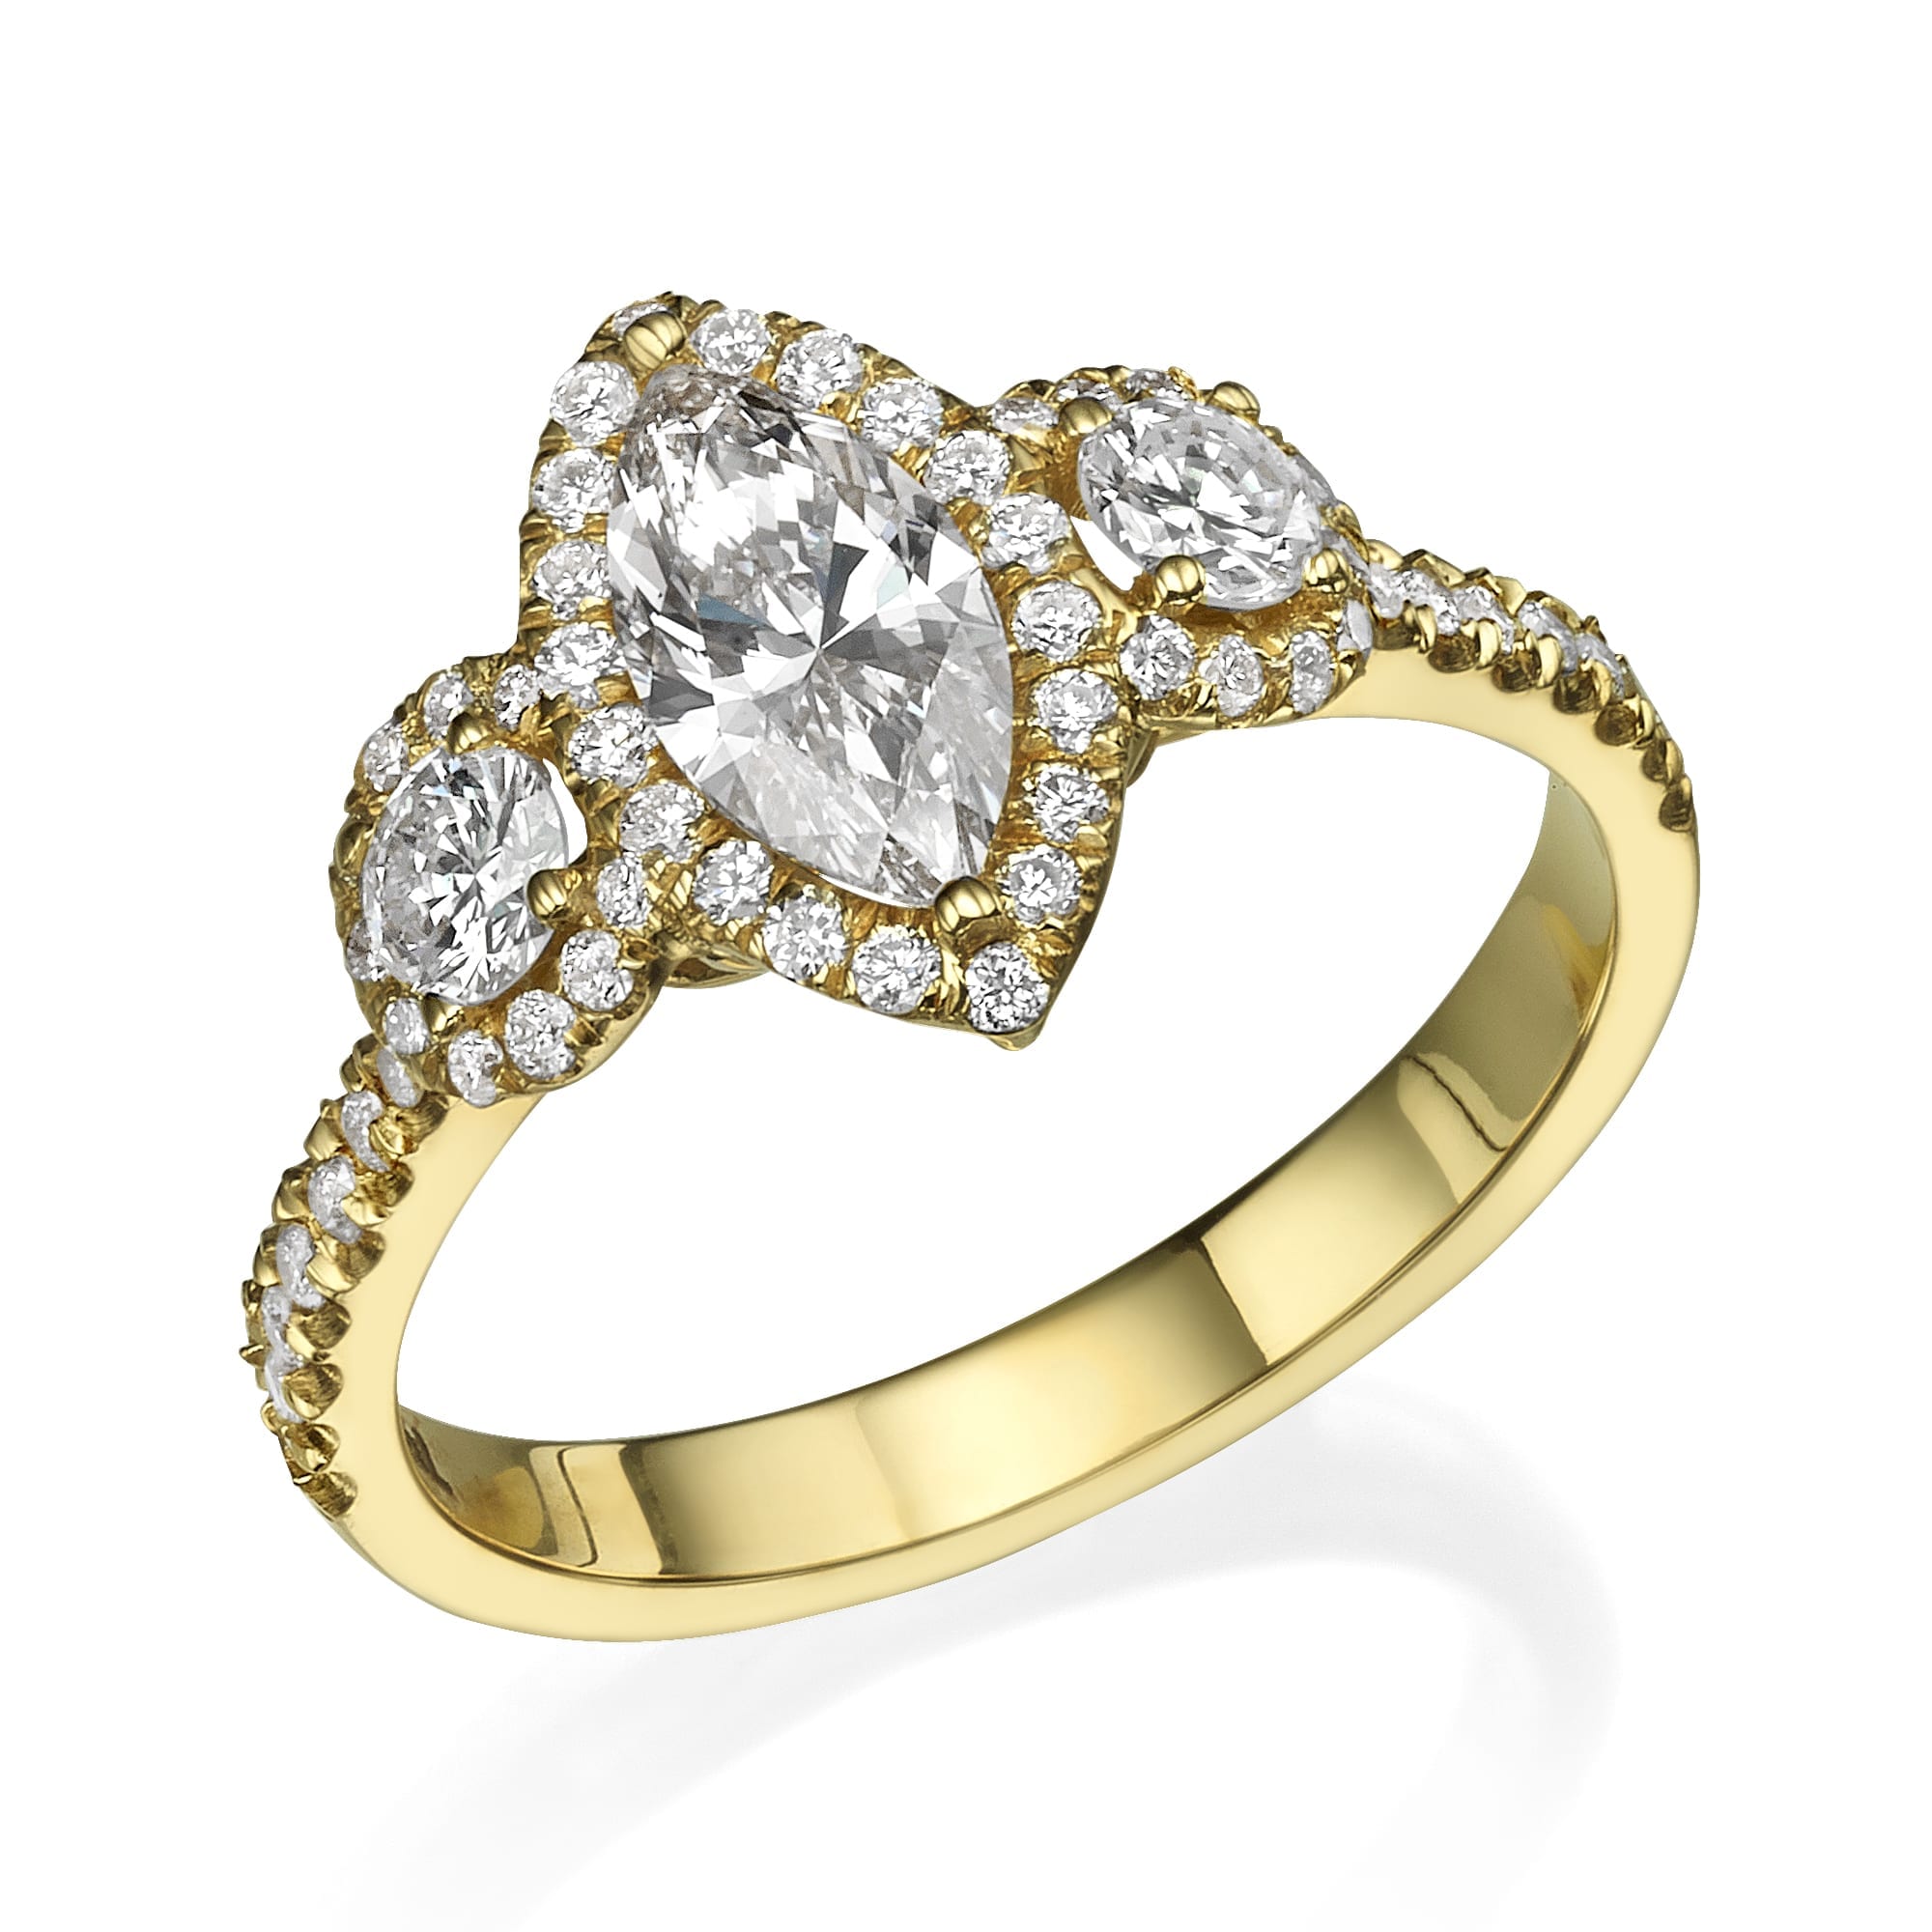 טבעת דגם אלגנטית שאנון מעוטרת במגוון נוצץ של מרקיז ויהלומים בחיתוך עגול משובצים בעיצוב מתוחכם.